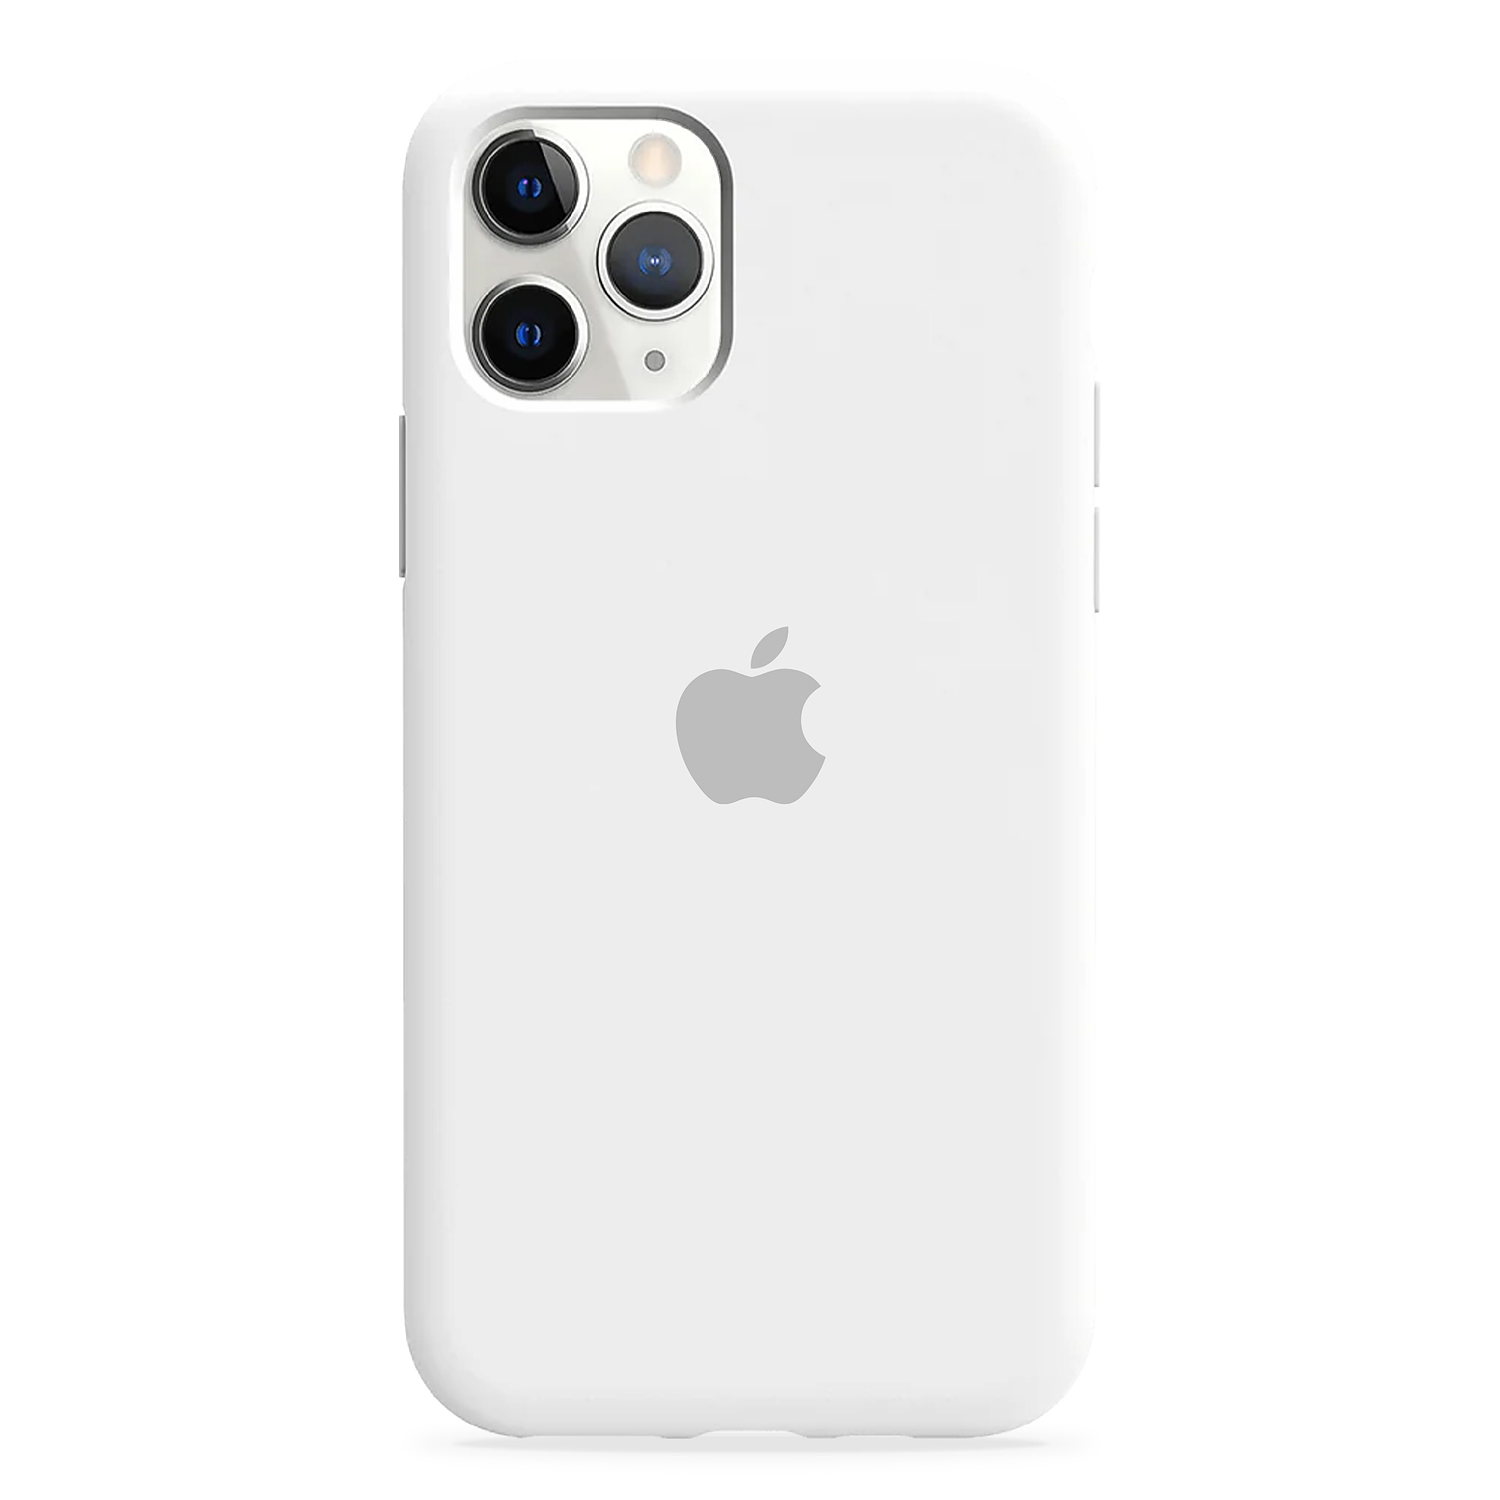 Carcasa de Silicona - iPhone 11 Pro Max 11